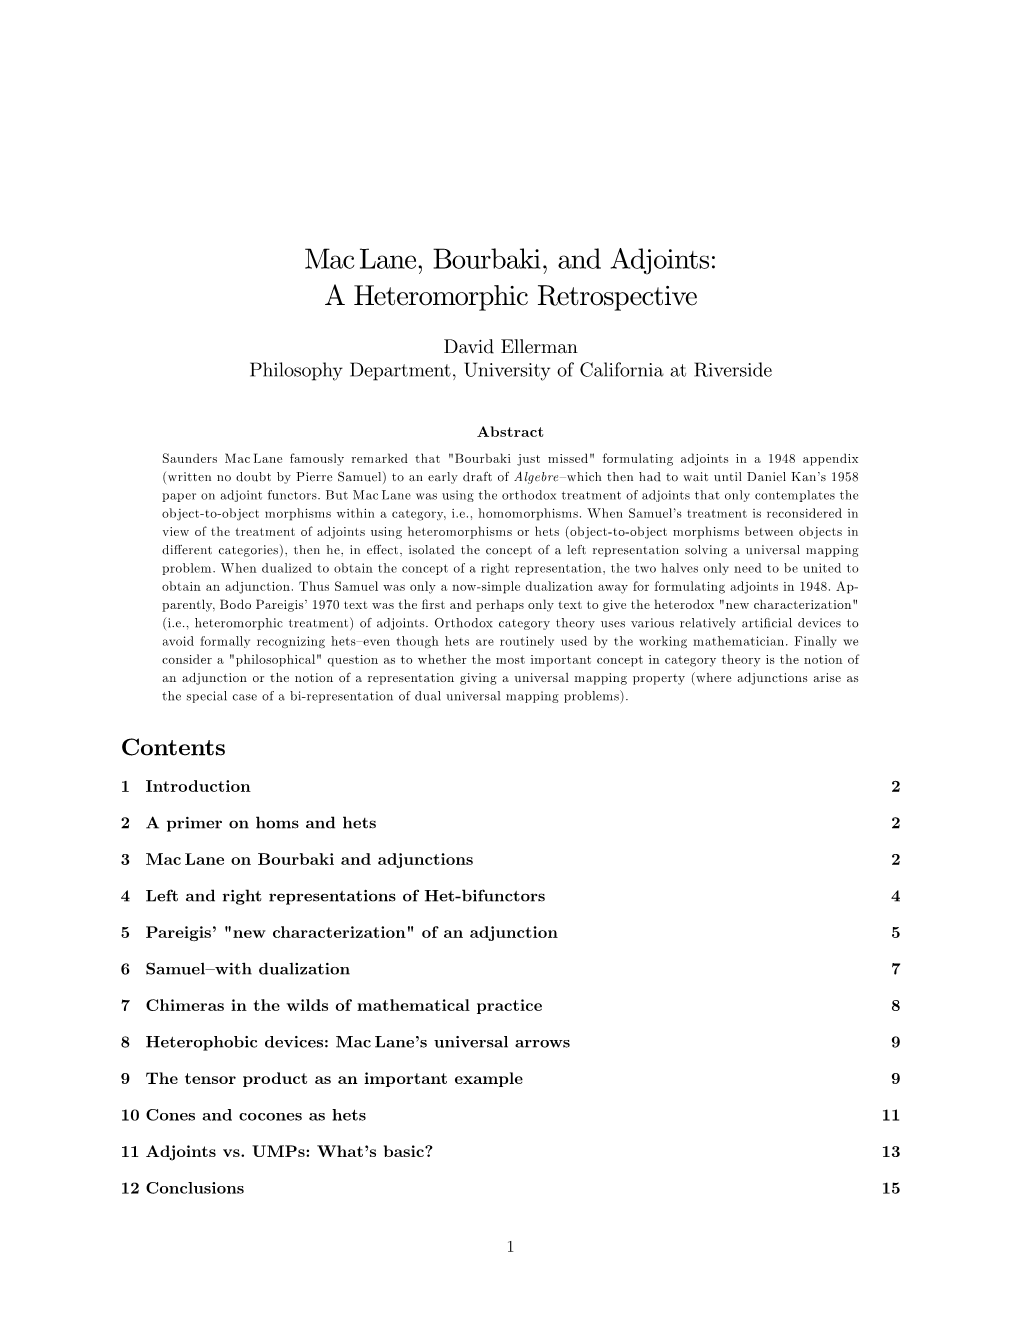 Maclane, Bourbaki, and Adjoints: a Heteromorphic Retrospective